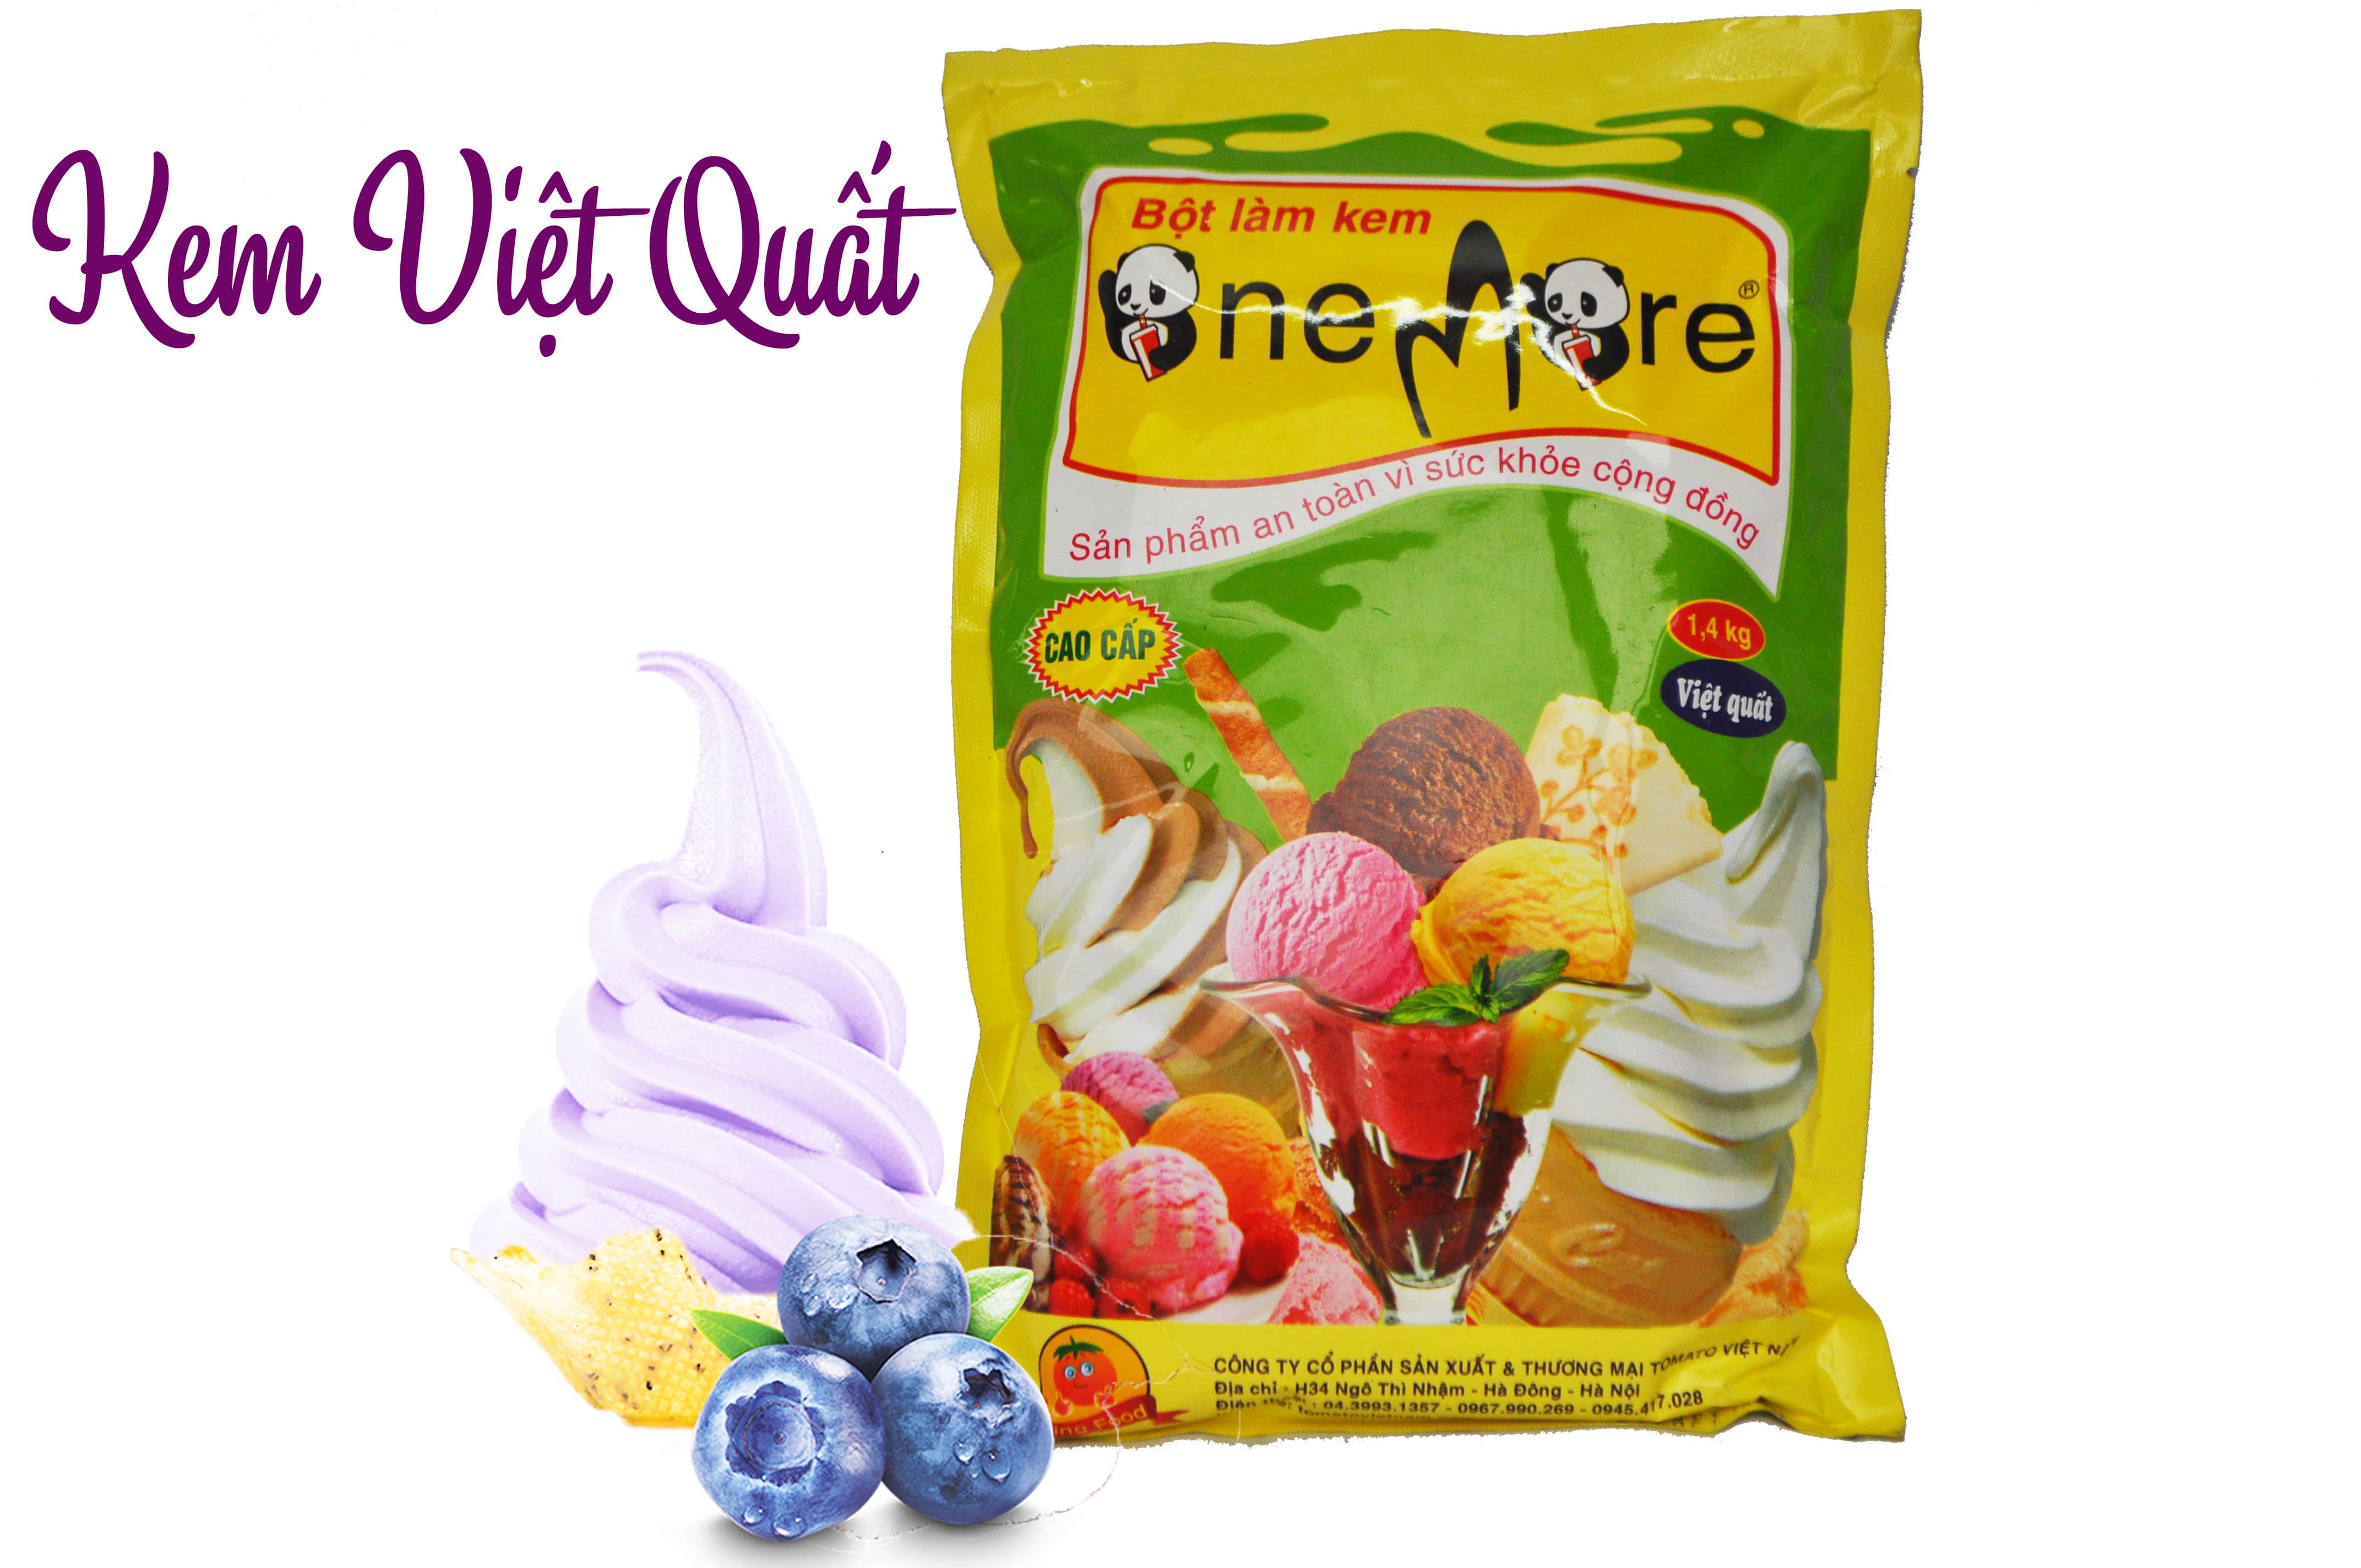 Bột làm kem OneMore vị Việt Quất